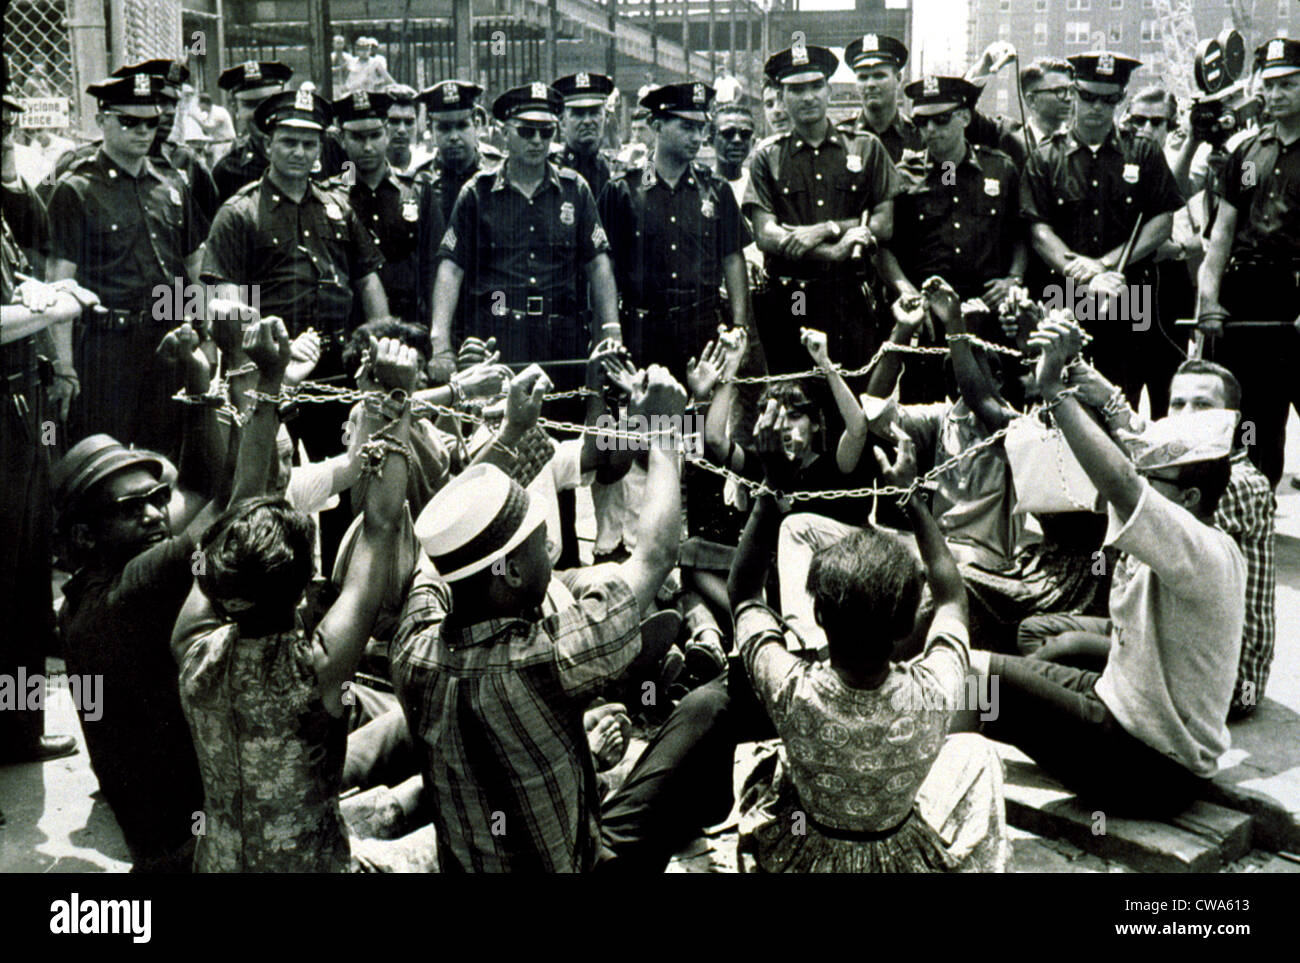 Las protestas de grupos de derechos civiles la contratación discriminatoria en Brooklyn, Nueva York en 1963. Cortesía: CSU Archives / Everett Collection Foto de stock